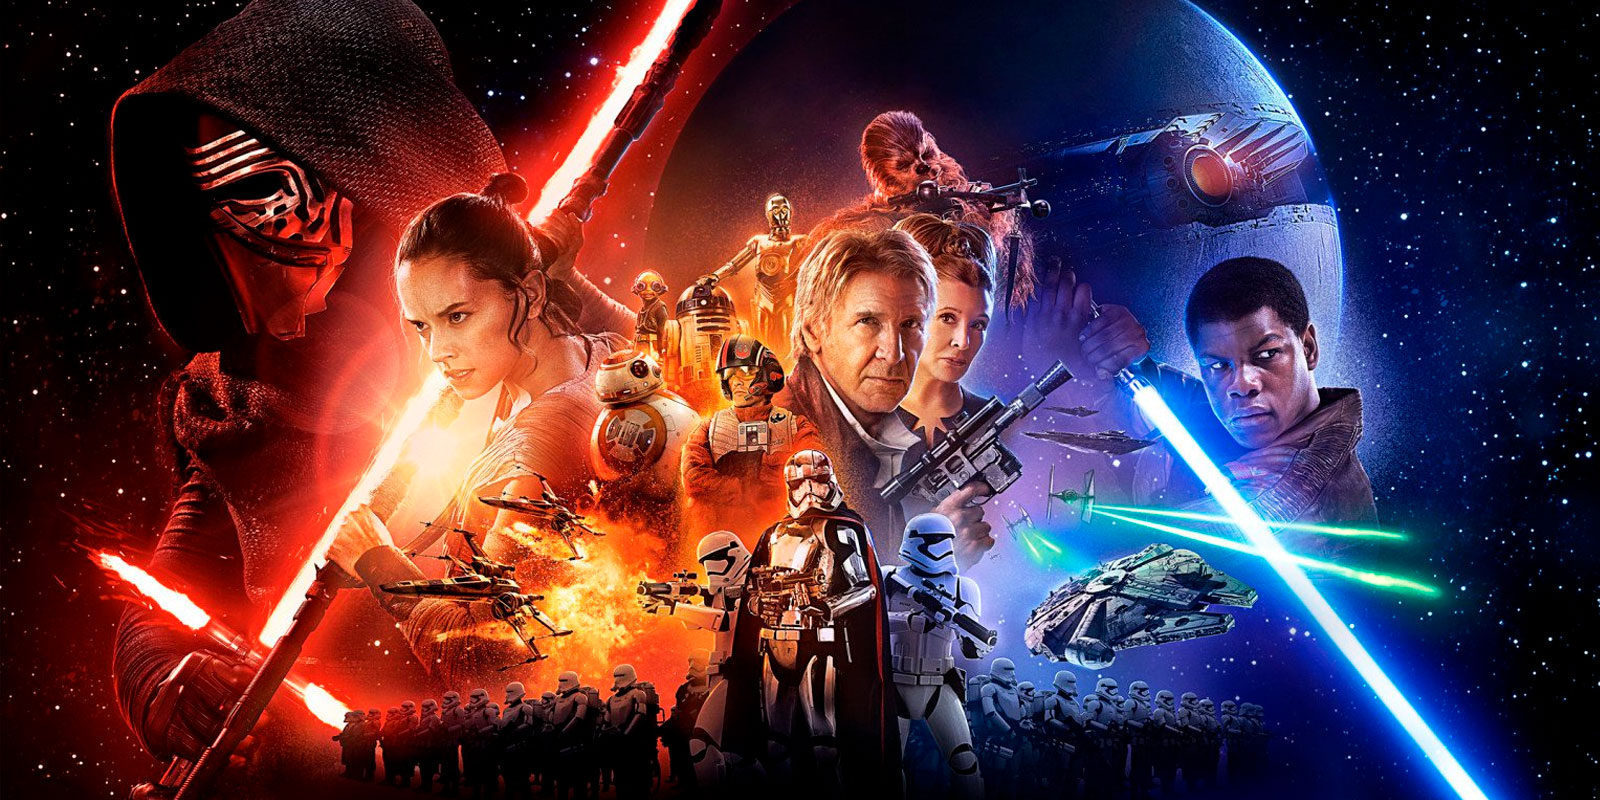 El rodaje de 'Star Wars IX' podría arrancar este mismo verano